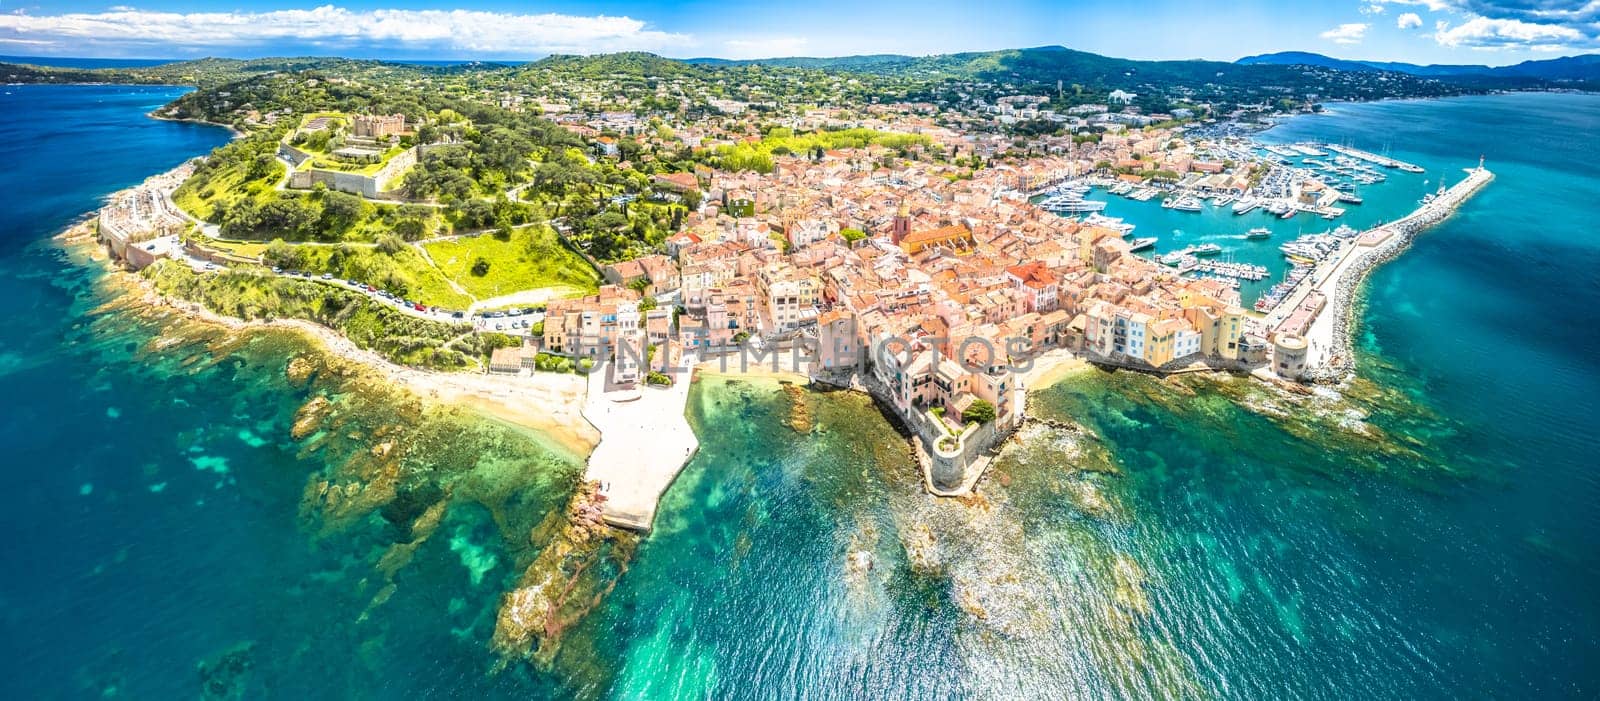 Saint Tropez village fortress and landscape aerial panoramic view, famous tourist destination on Cote d Azur by xbrchx